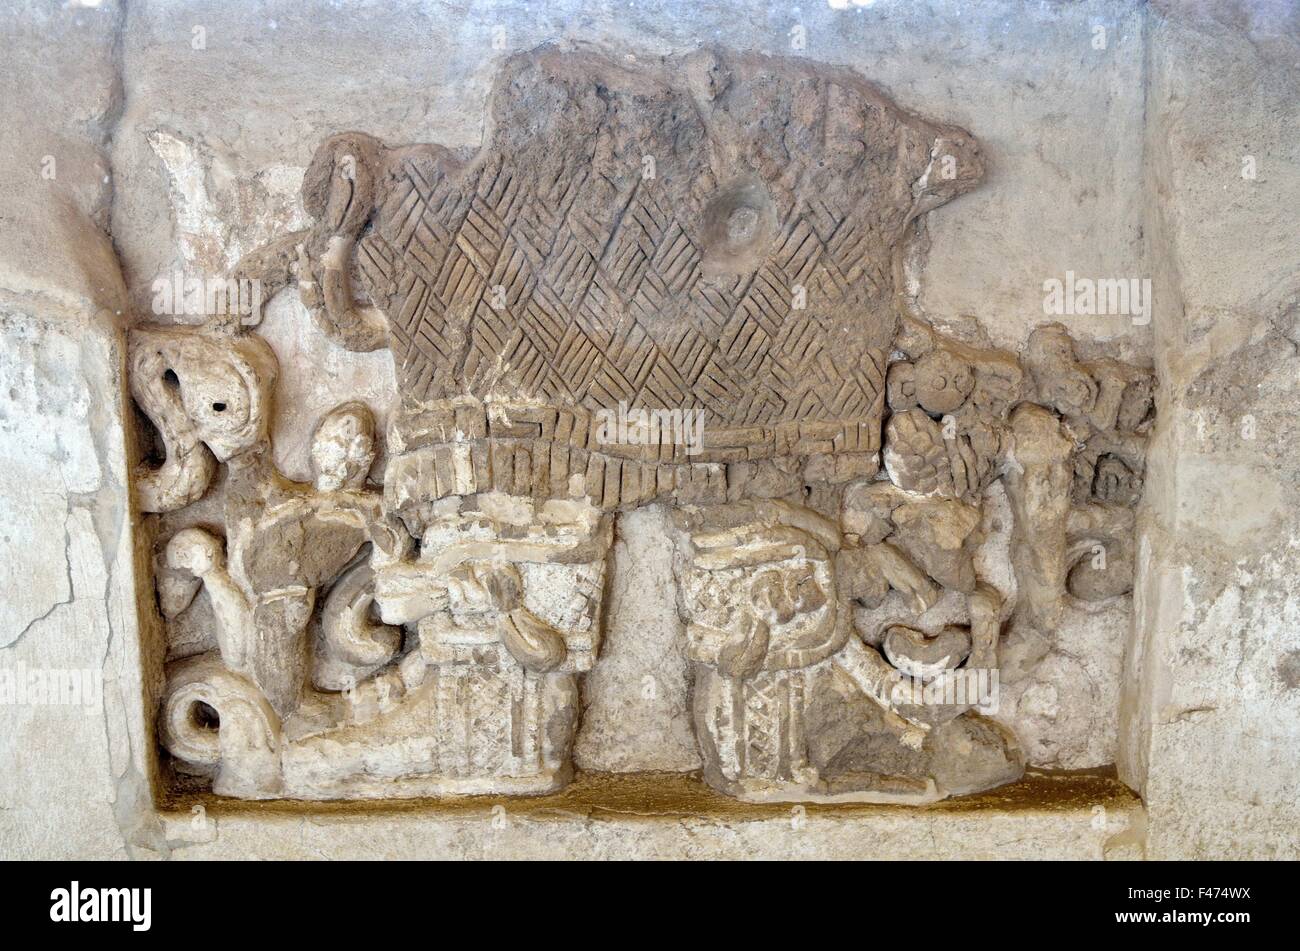 Rilievo di parete, la rappresentazione di una colonna di gioielleria, lo scavo del sito site Cacaxtla in Tlaxcala, stato di Tlaxcala, Messico Foto Stock